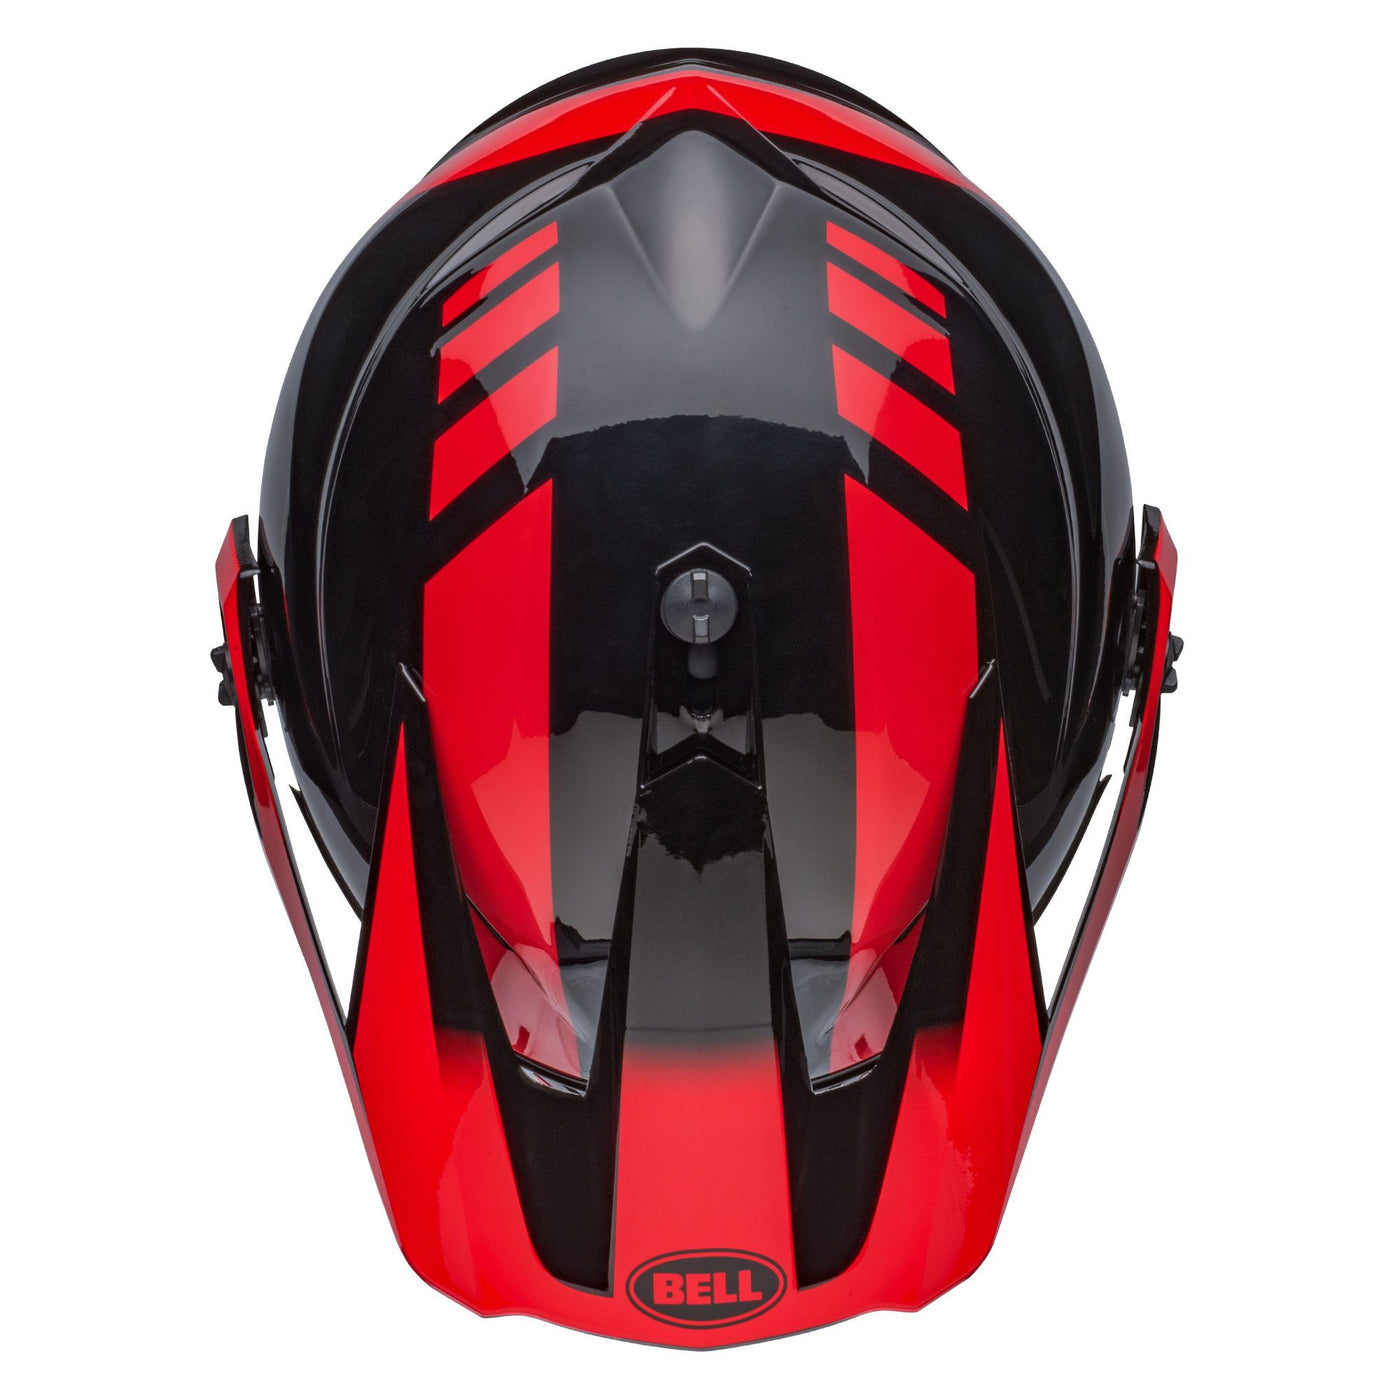 bell mx 9 adventure mips dirt motorcycle helmet dash gloss black red top